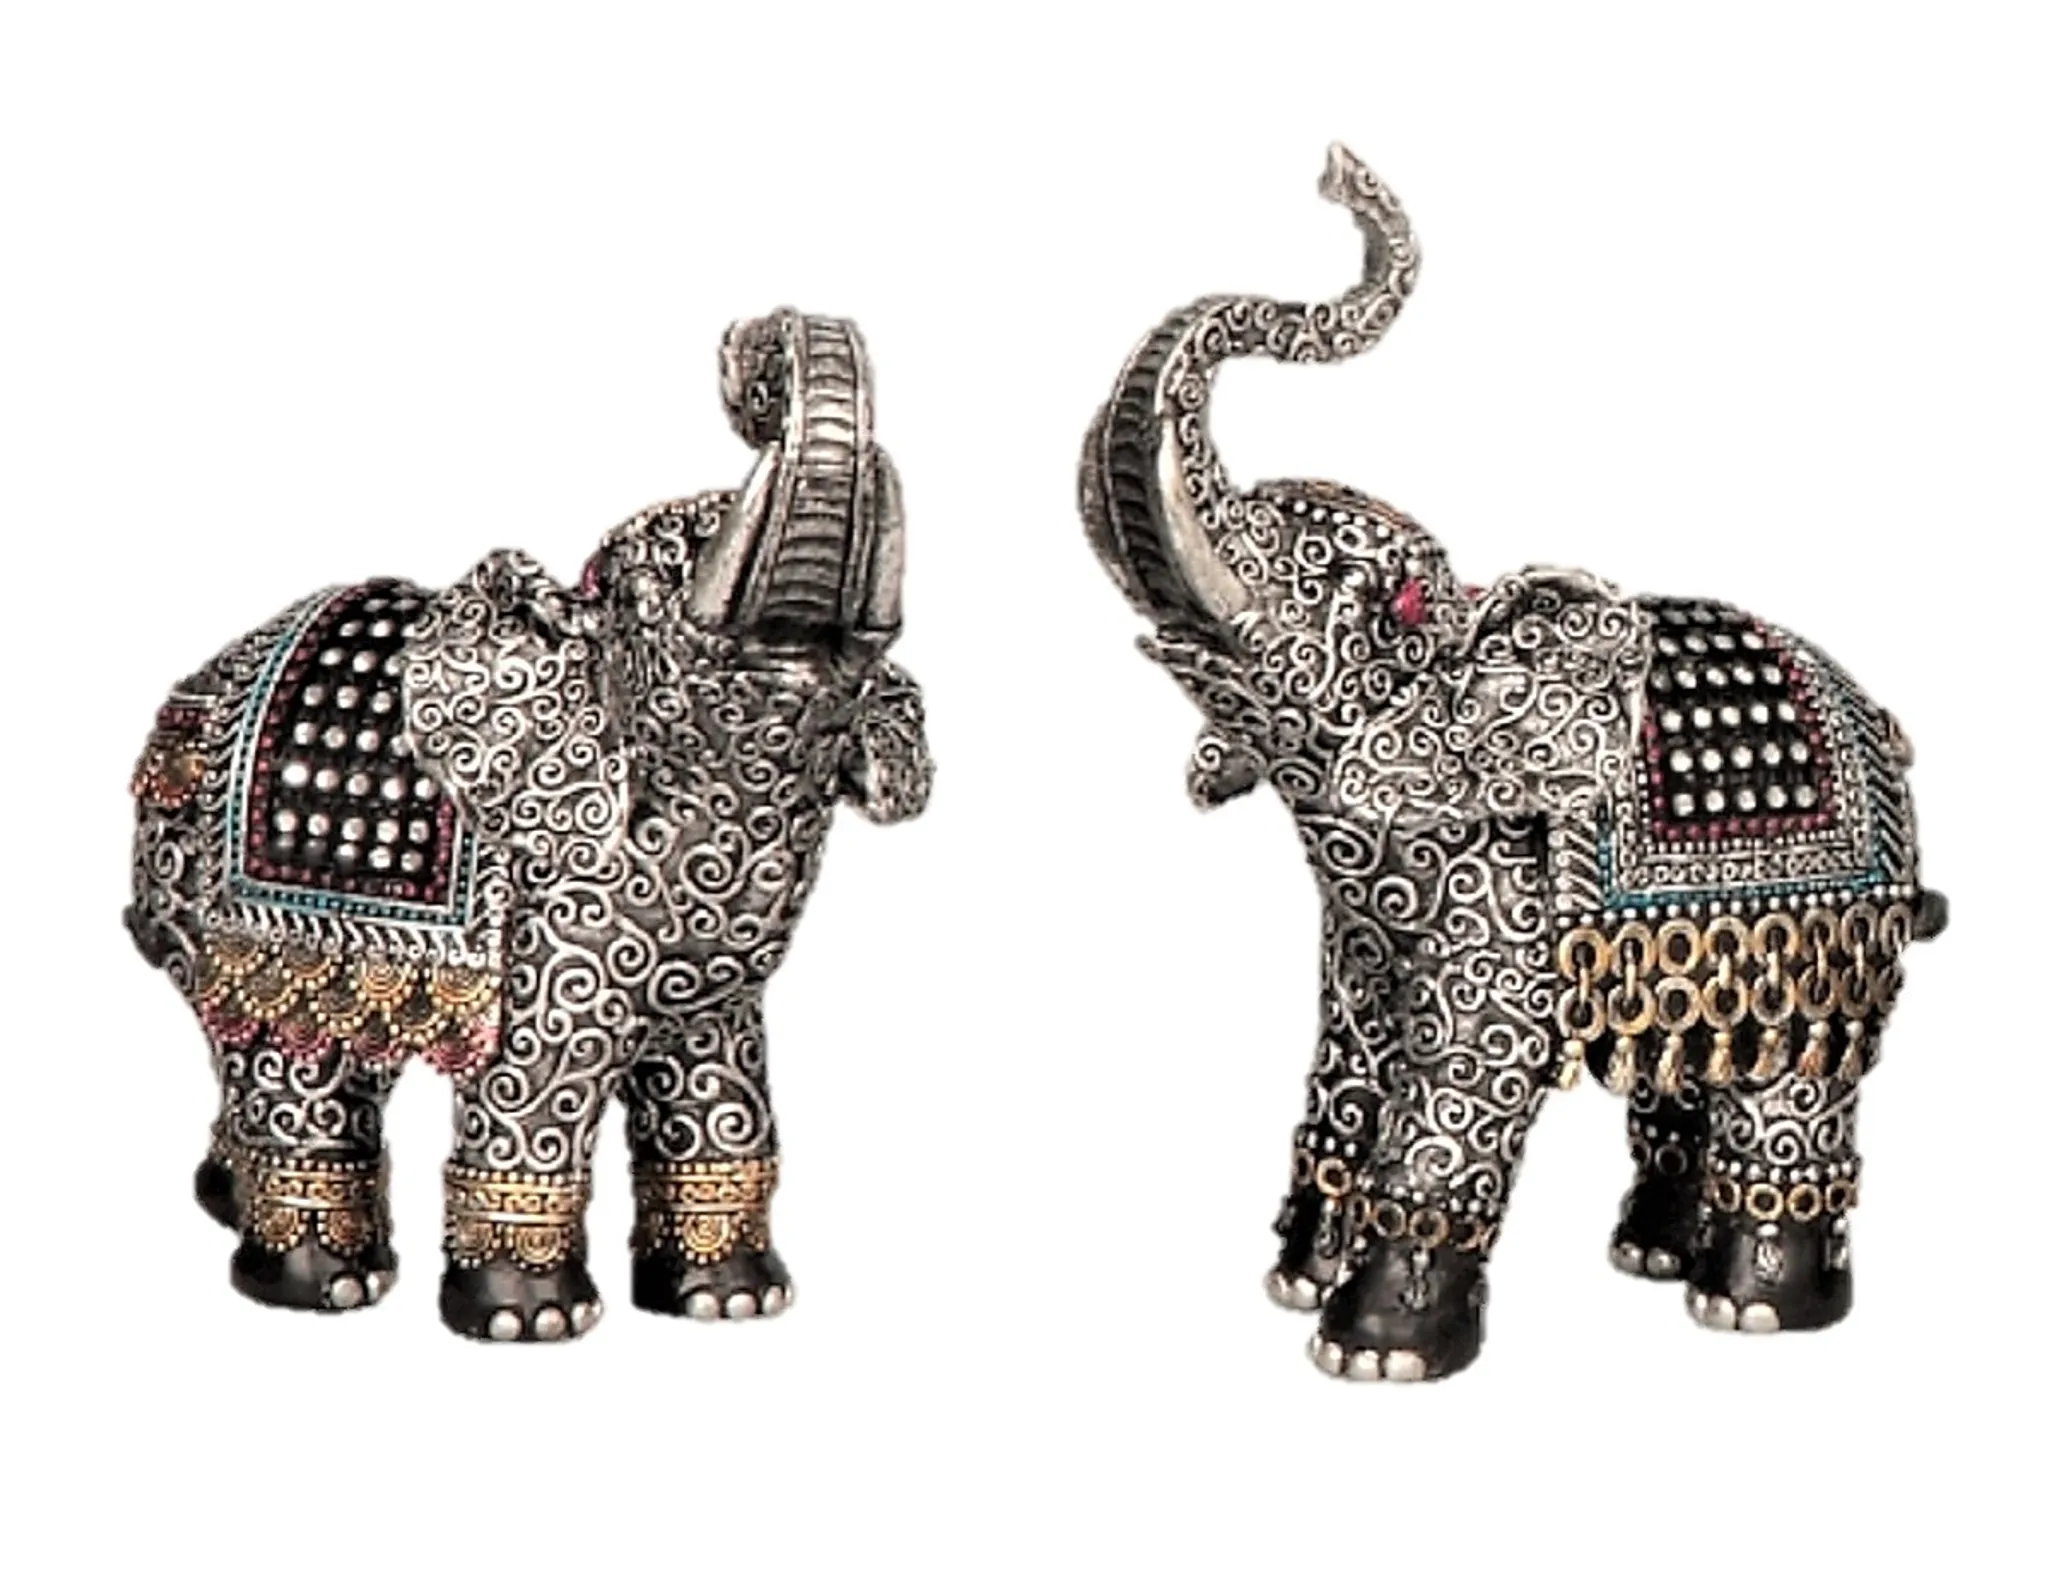 2 Elefanten Dekofiguren asiatische Tierfiguren je 16 cm